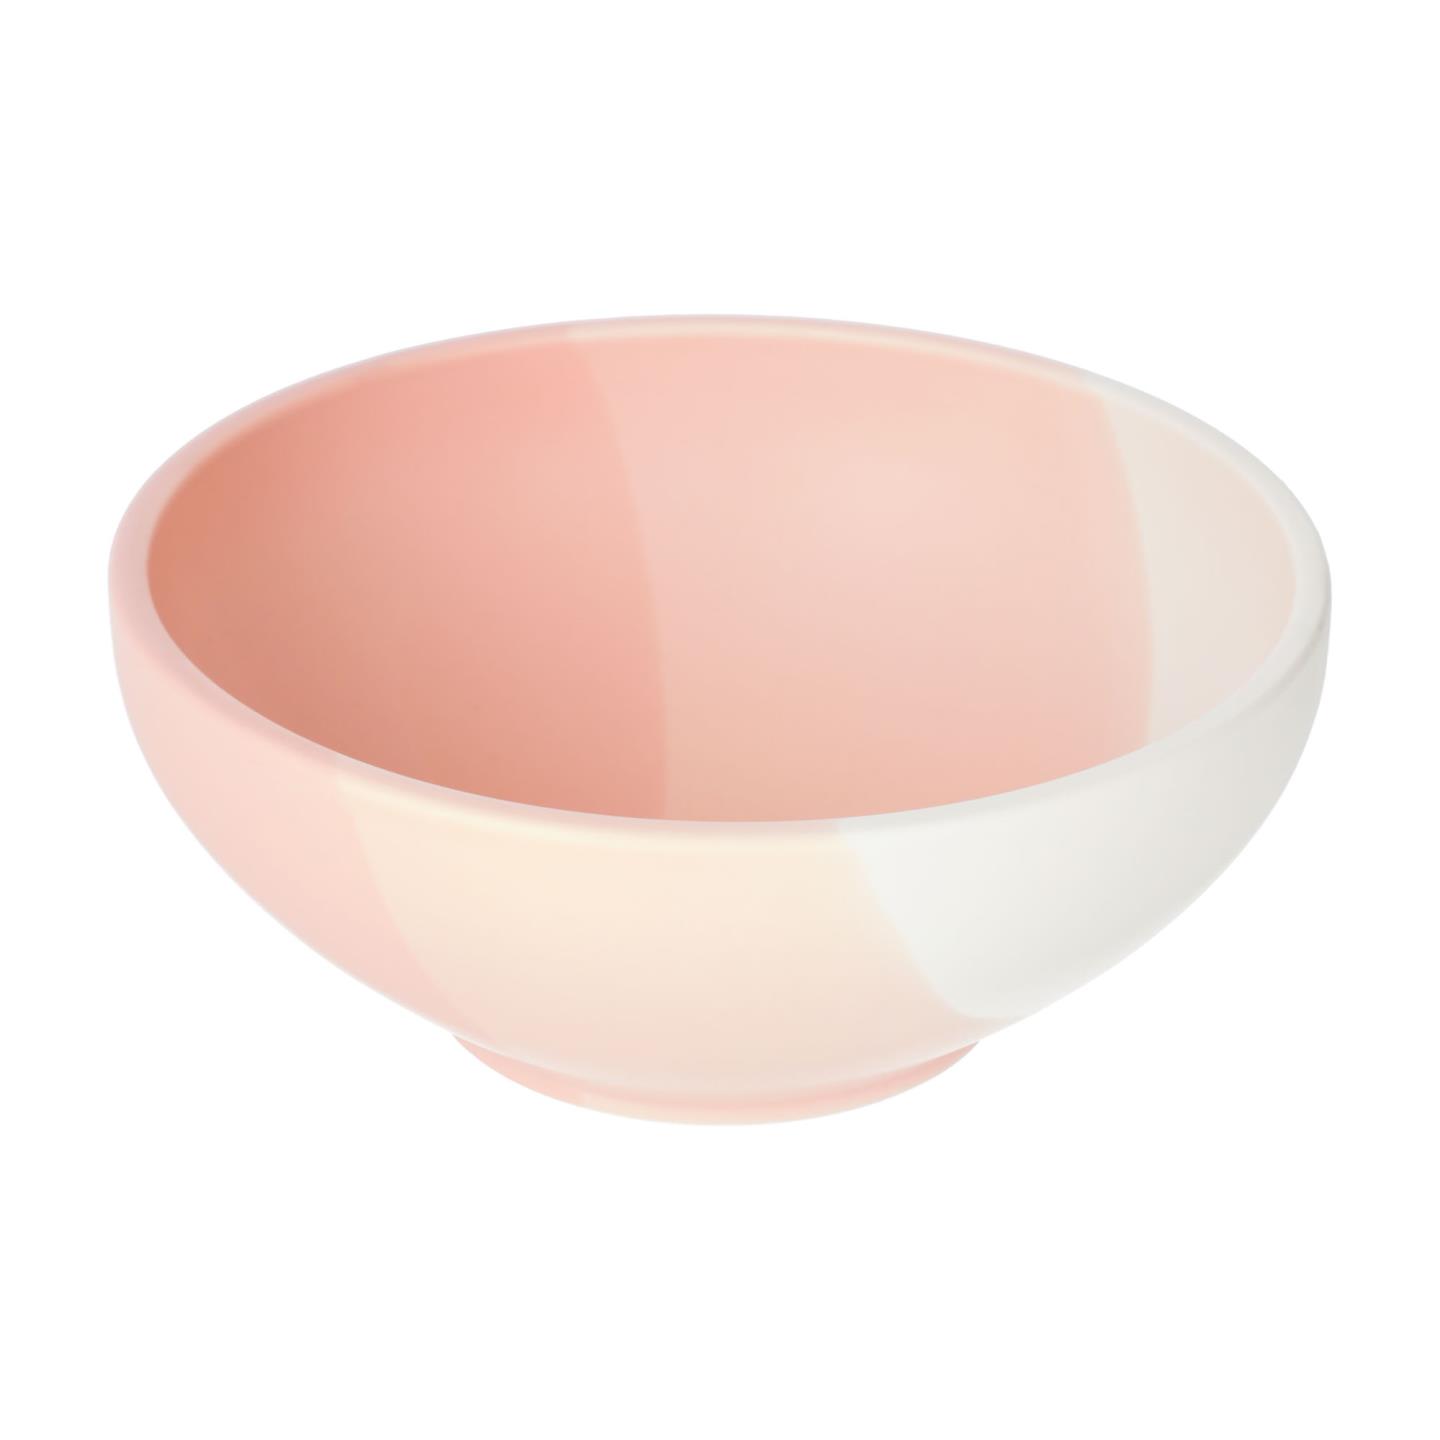 LAFORMA Sayuri stor skål - lyserød og hvid porcelæn (Ø24,3)